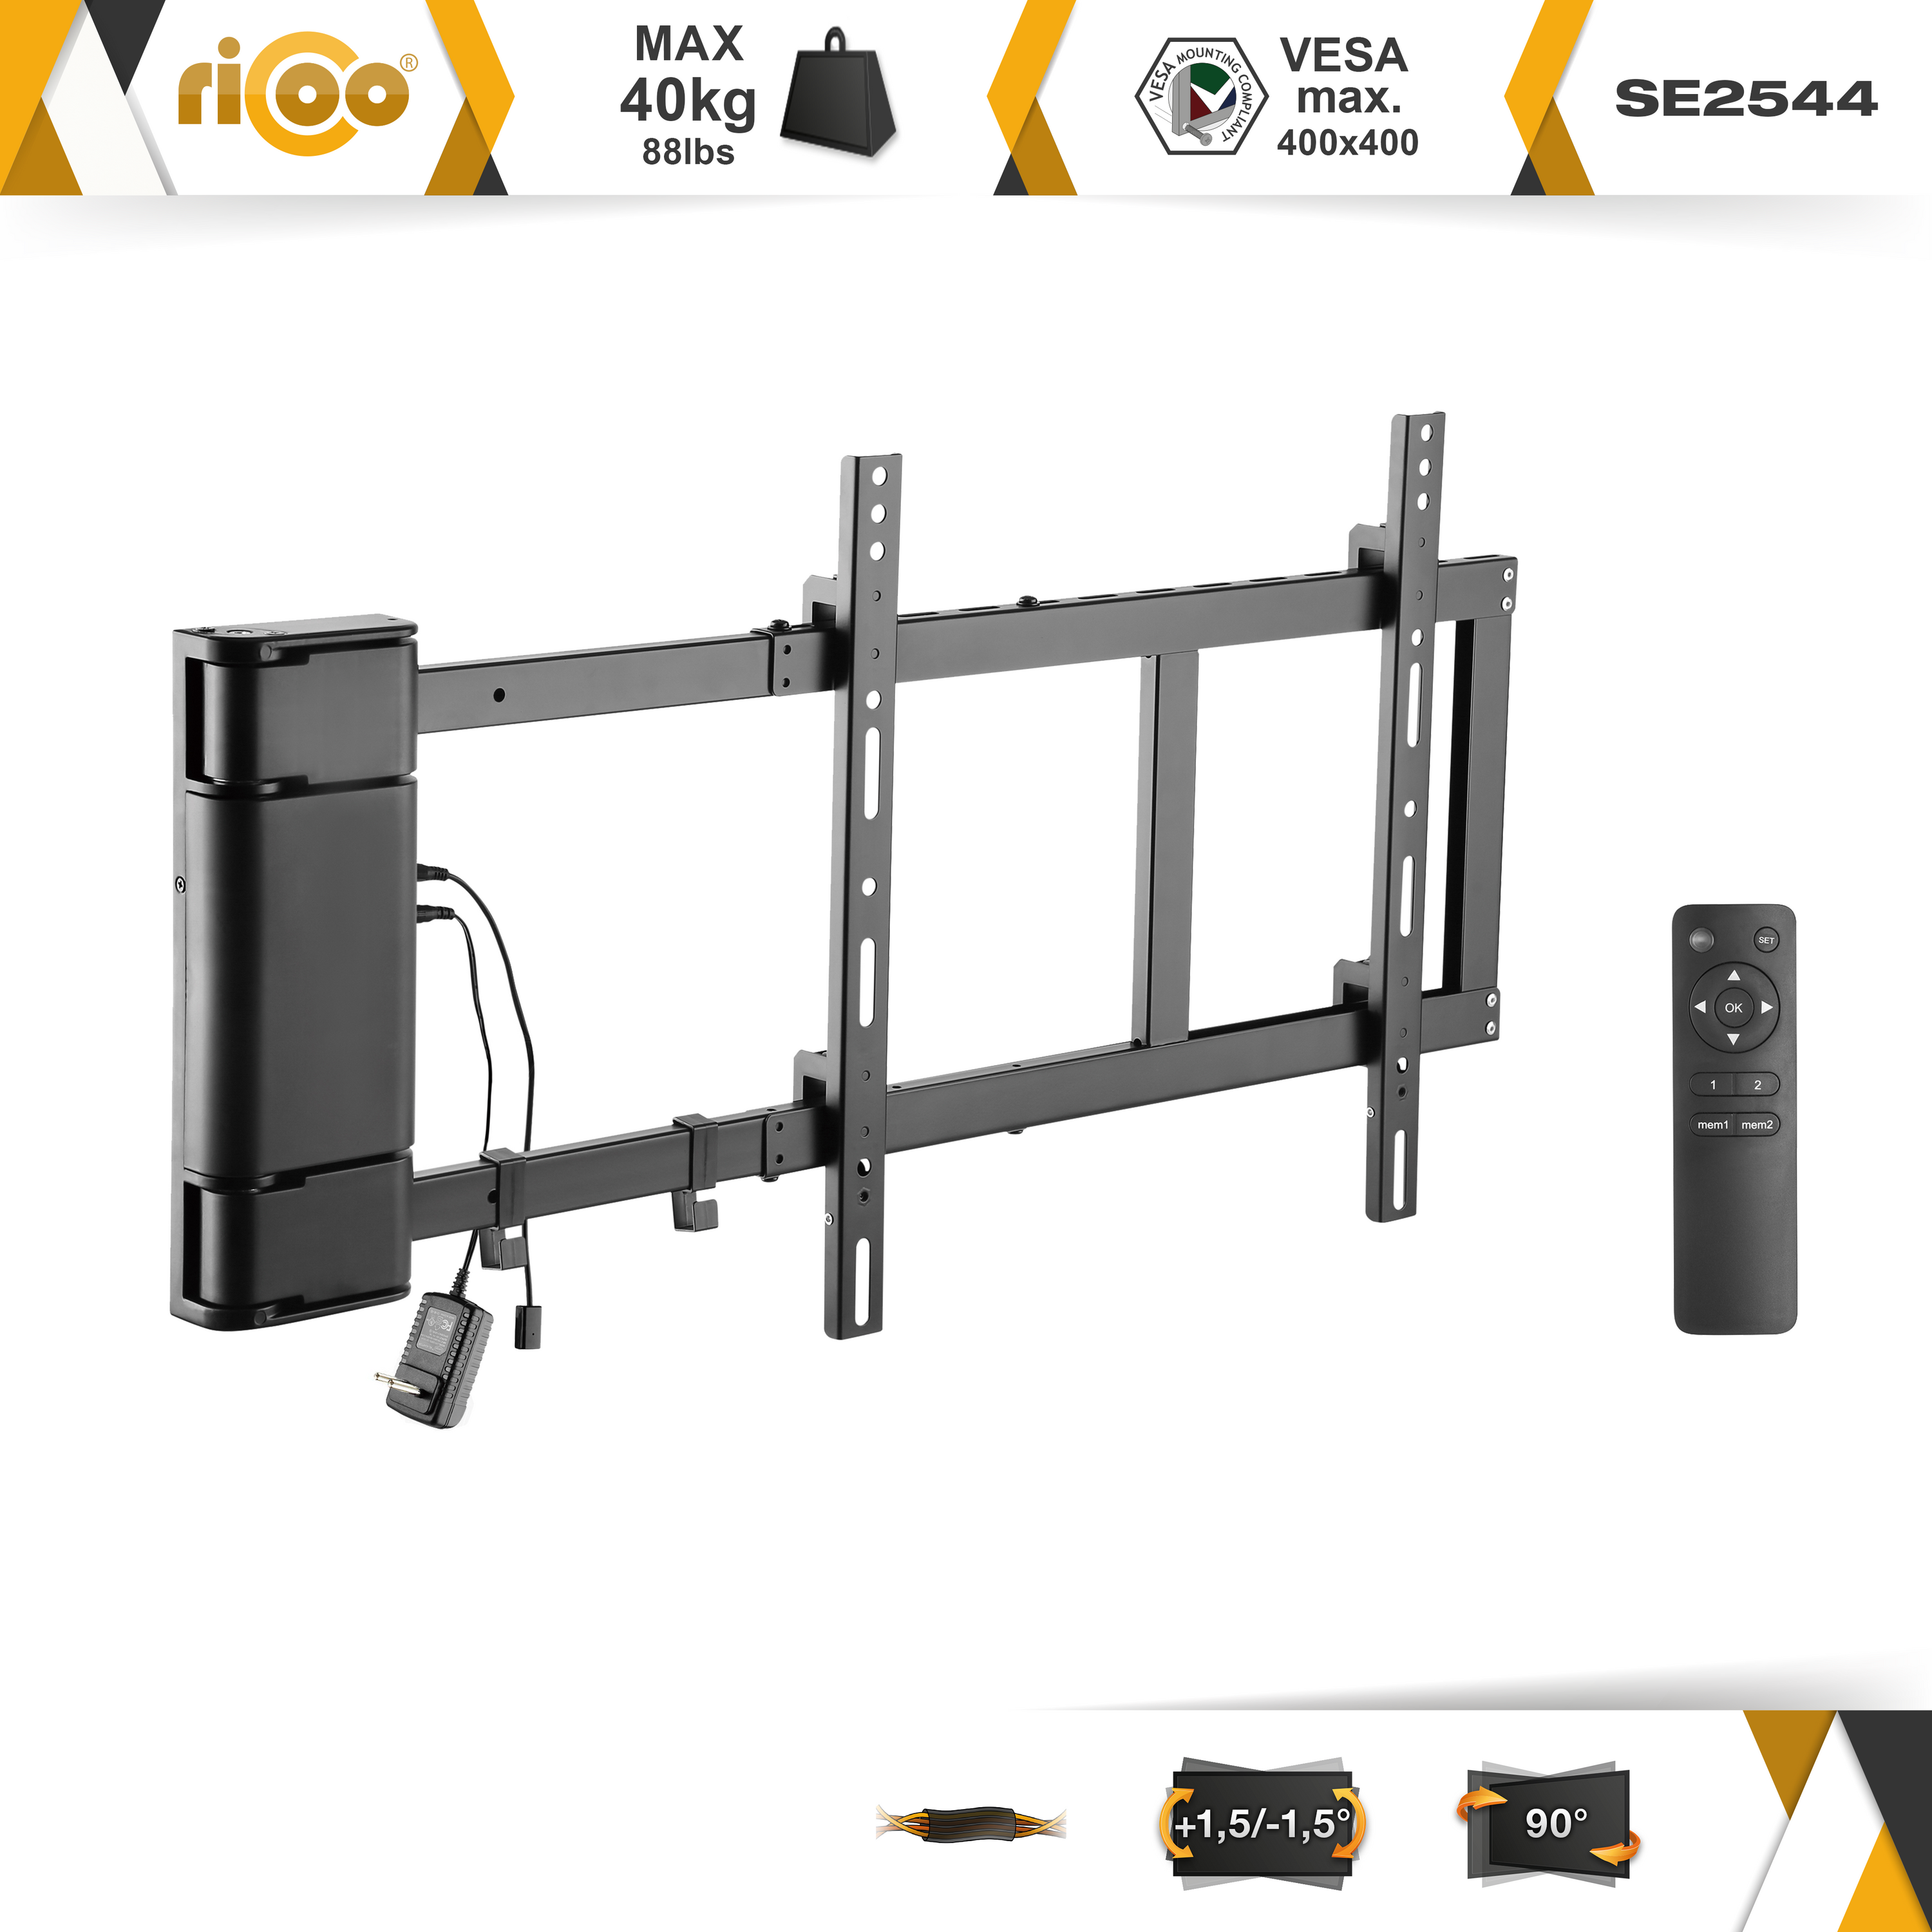 schwenkbar bis x Schwarz ausklappbar Fernseher 400 400 RICOO TV VESA SE2544 elektrisch Halterung Wandhalterung, universal